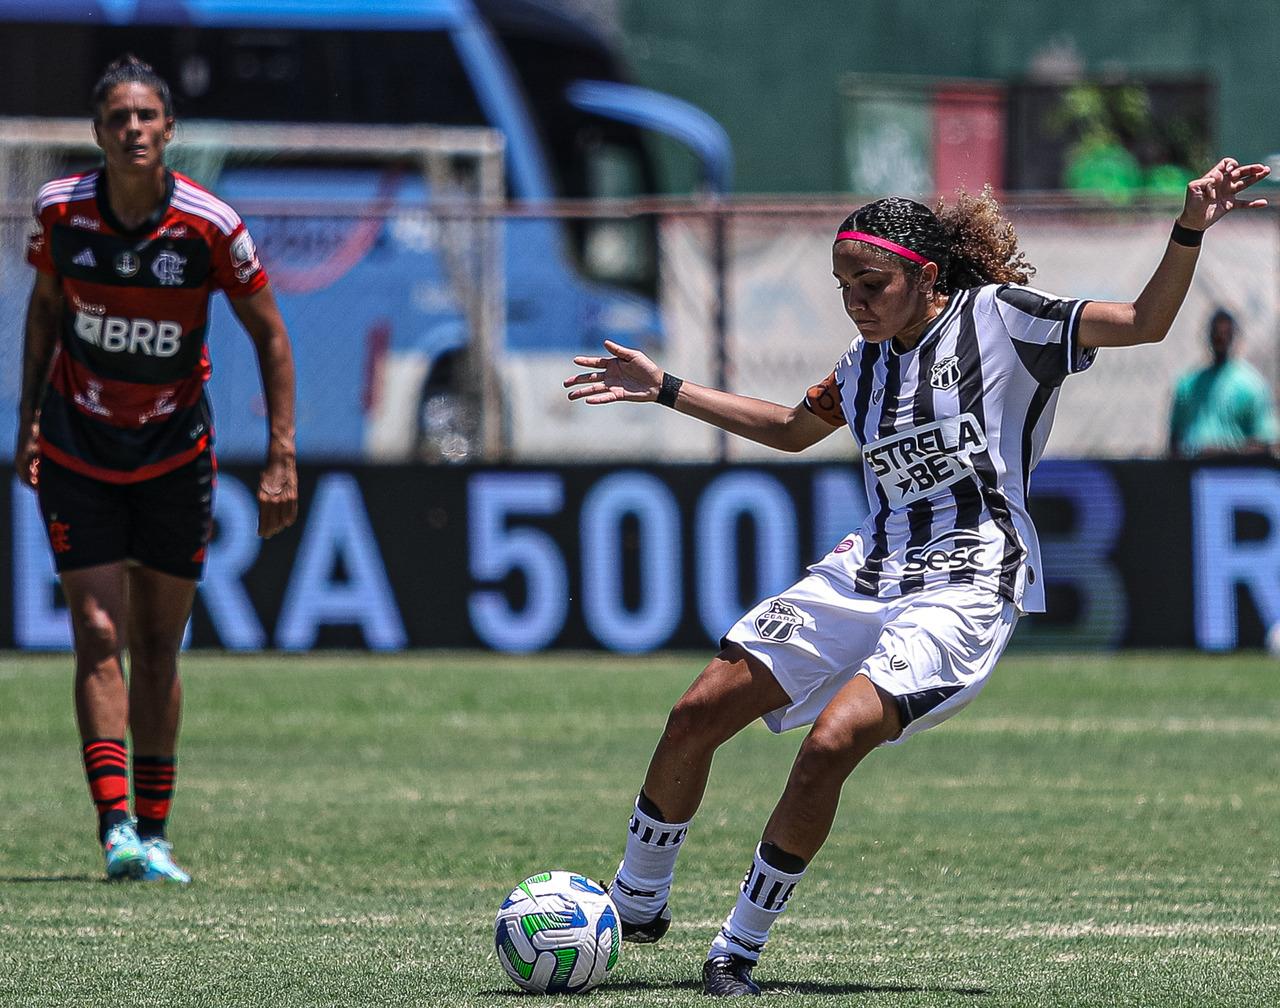 Fortaleza inicia preparação para Campeonato Brasileiro Feminino da Série A2  - Lance!